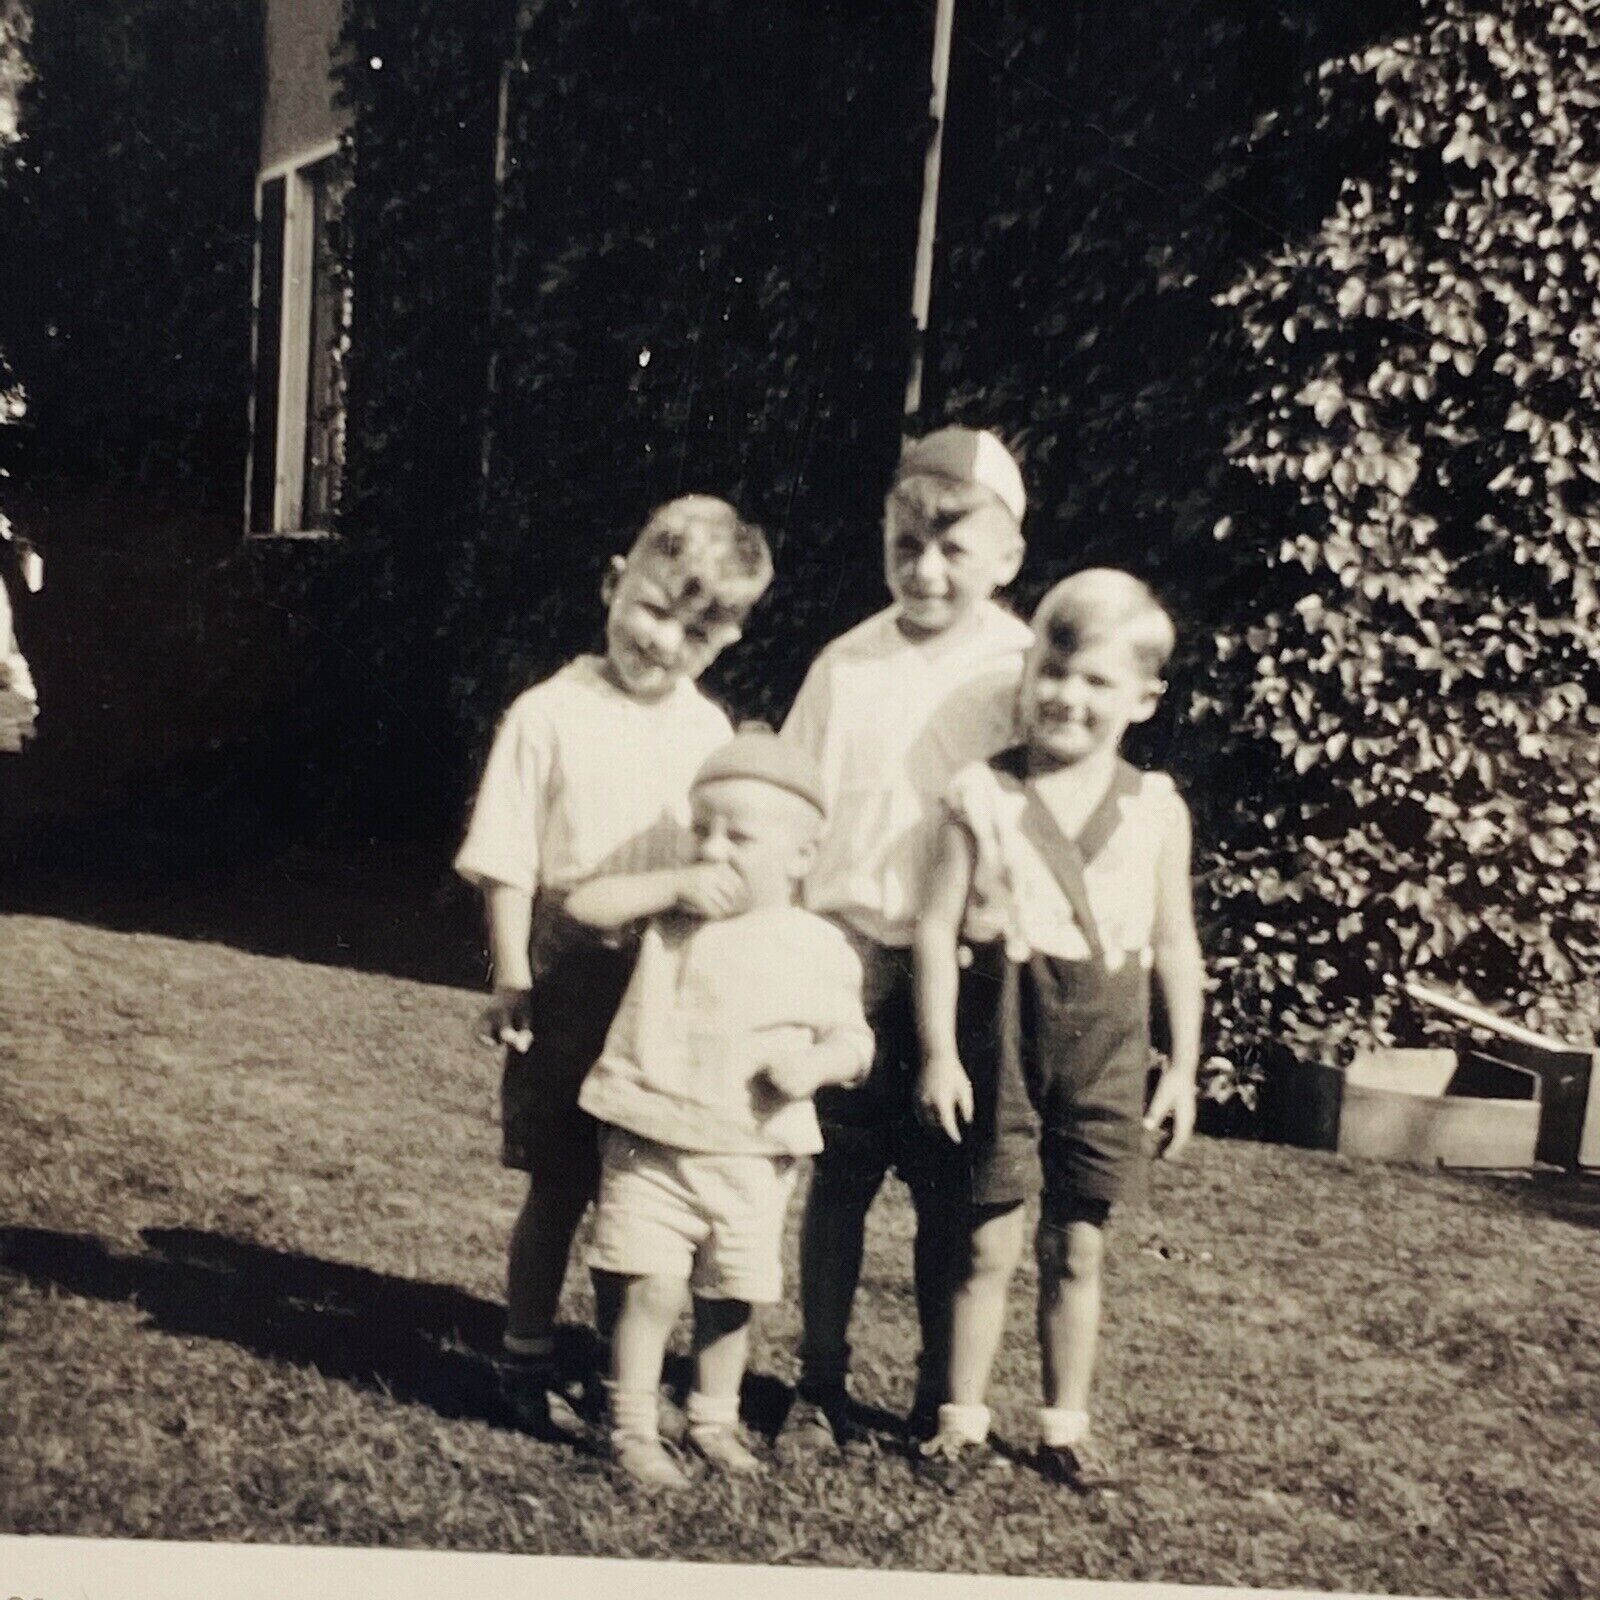 Vintage Photograph 4 Adorable Little Boys 1929 Black White Picture 3.5x2.5”